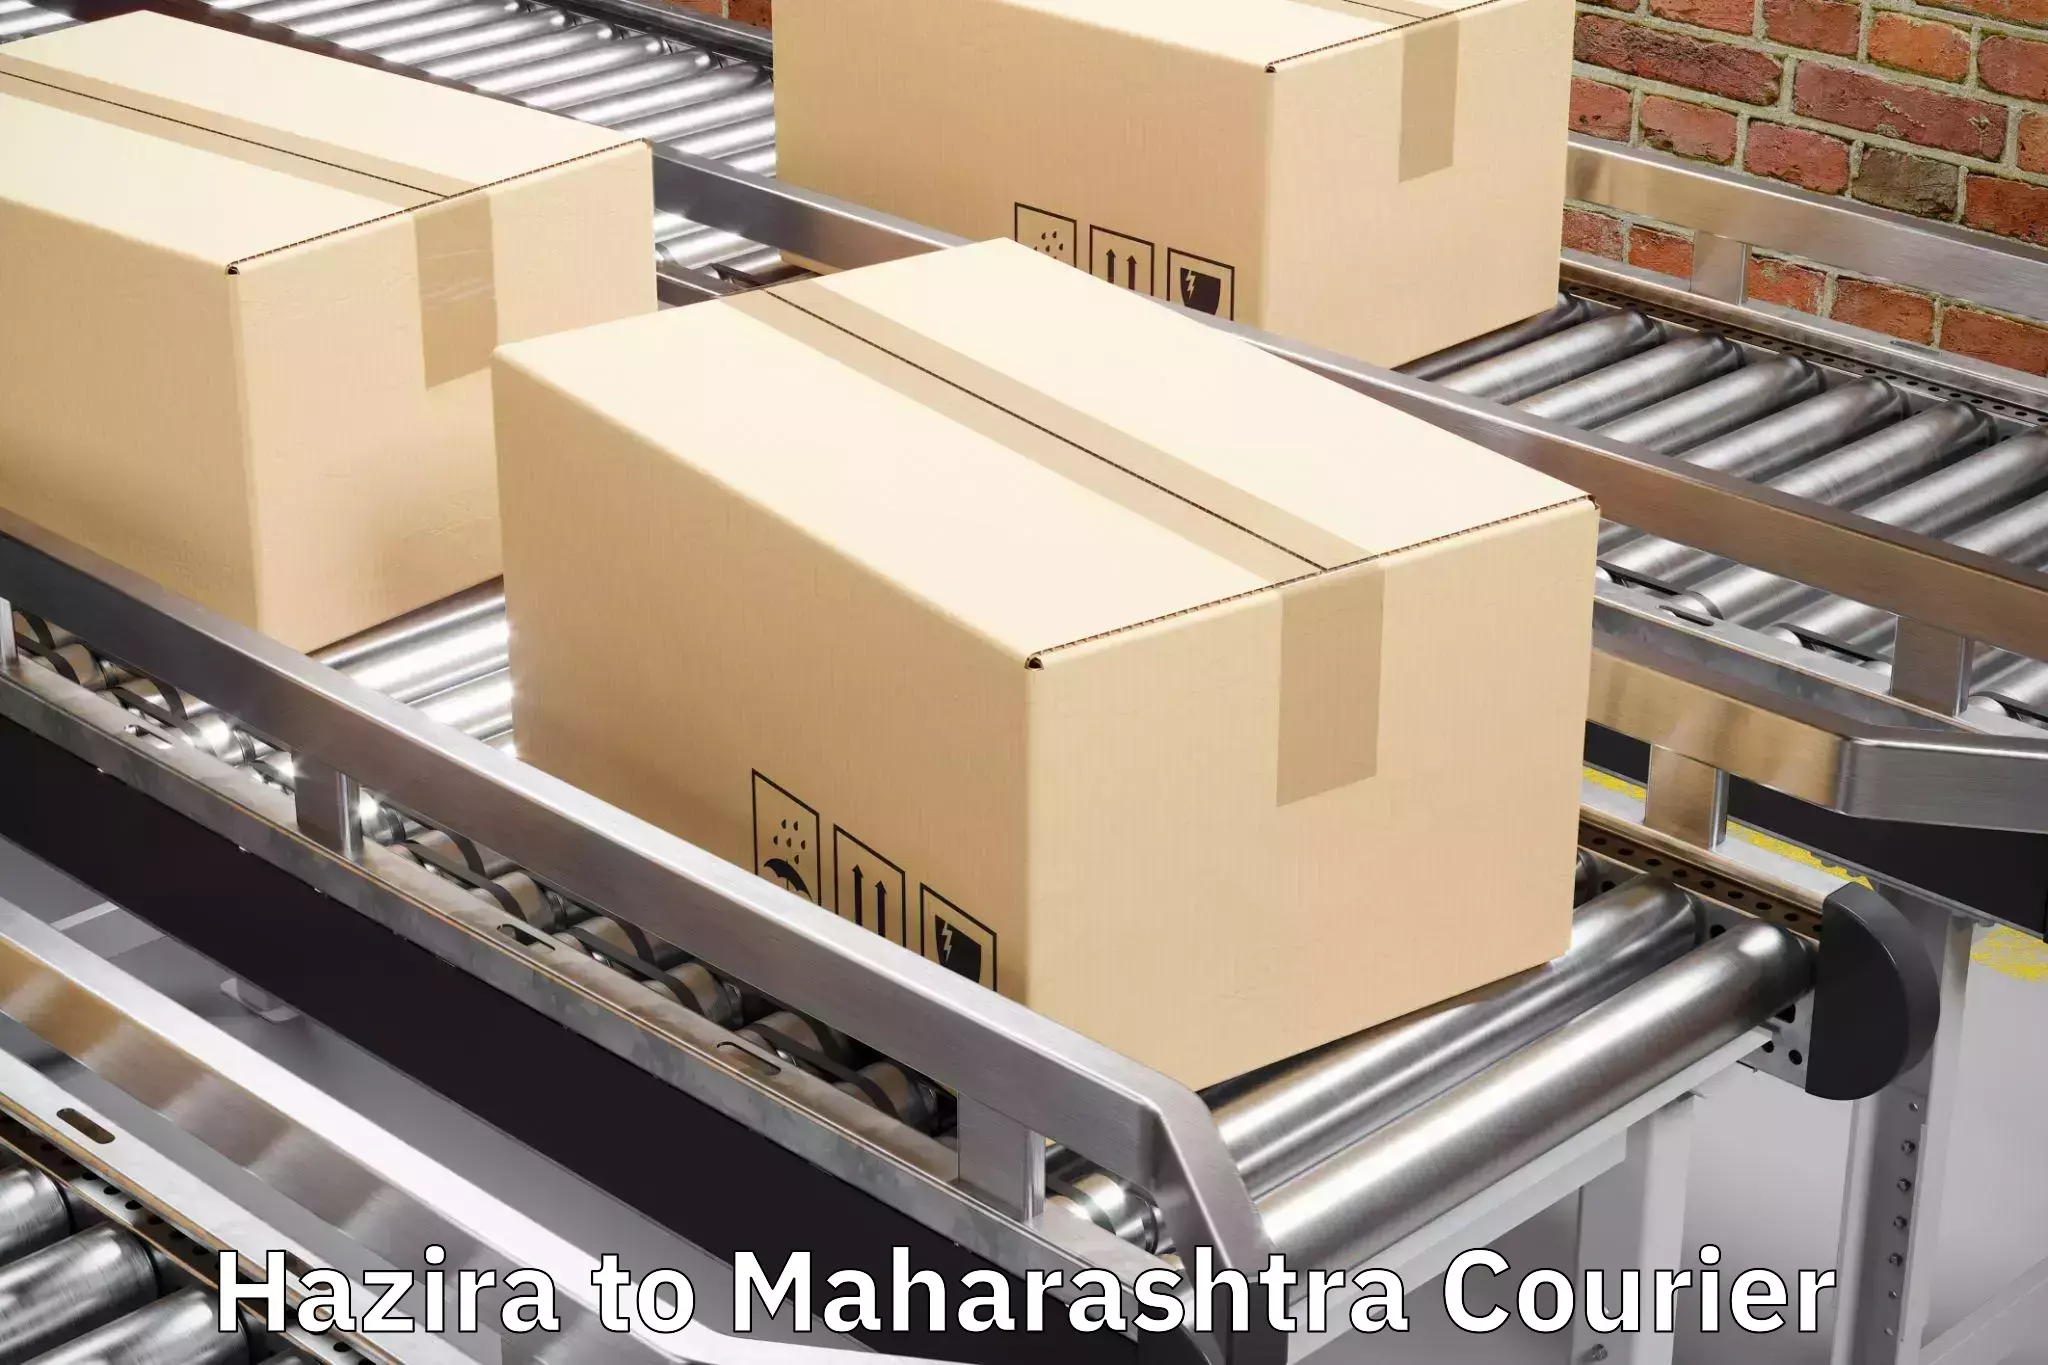 Doorstep luggage collection Hazira to Tata Institute of Social Sciences Mumbai